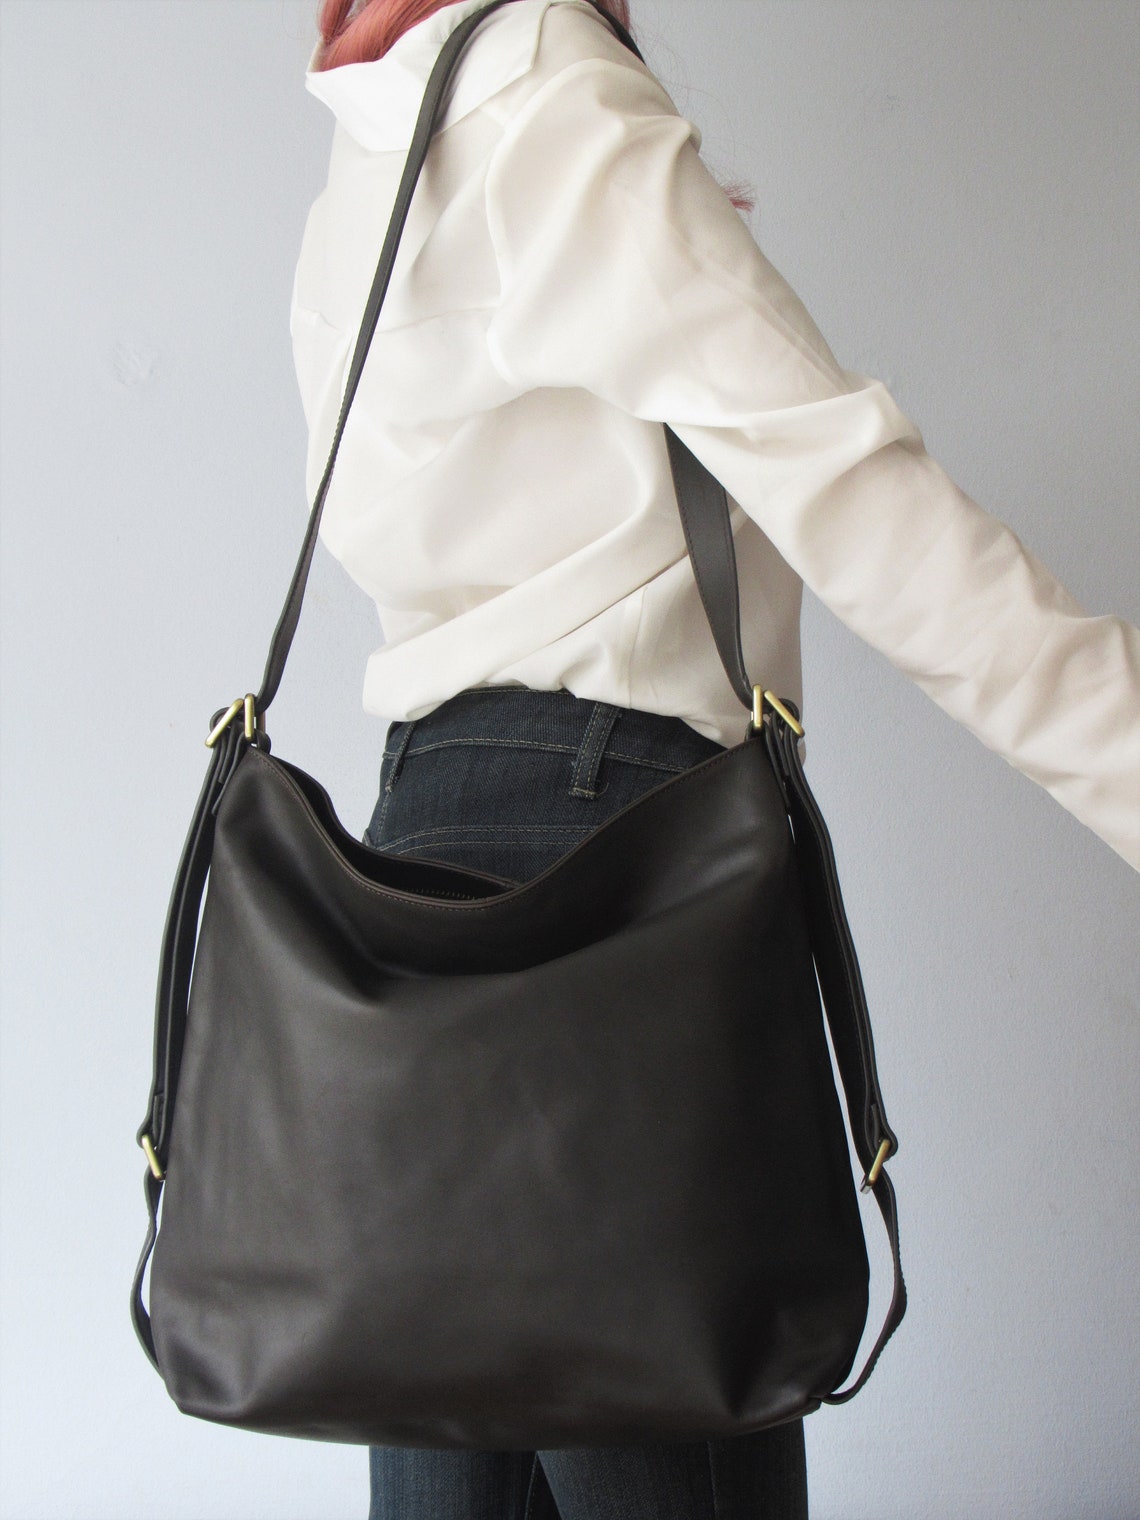 Convertible Backpack Leather Shoulder Bag Black Bag - Etsy Australia